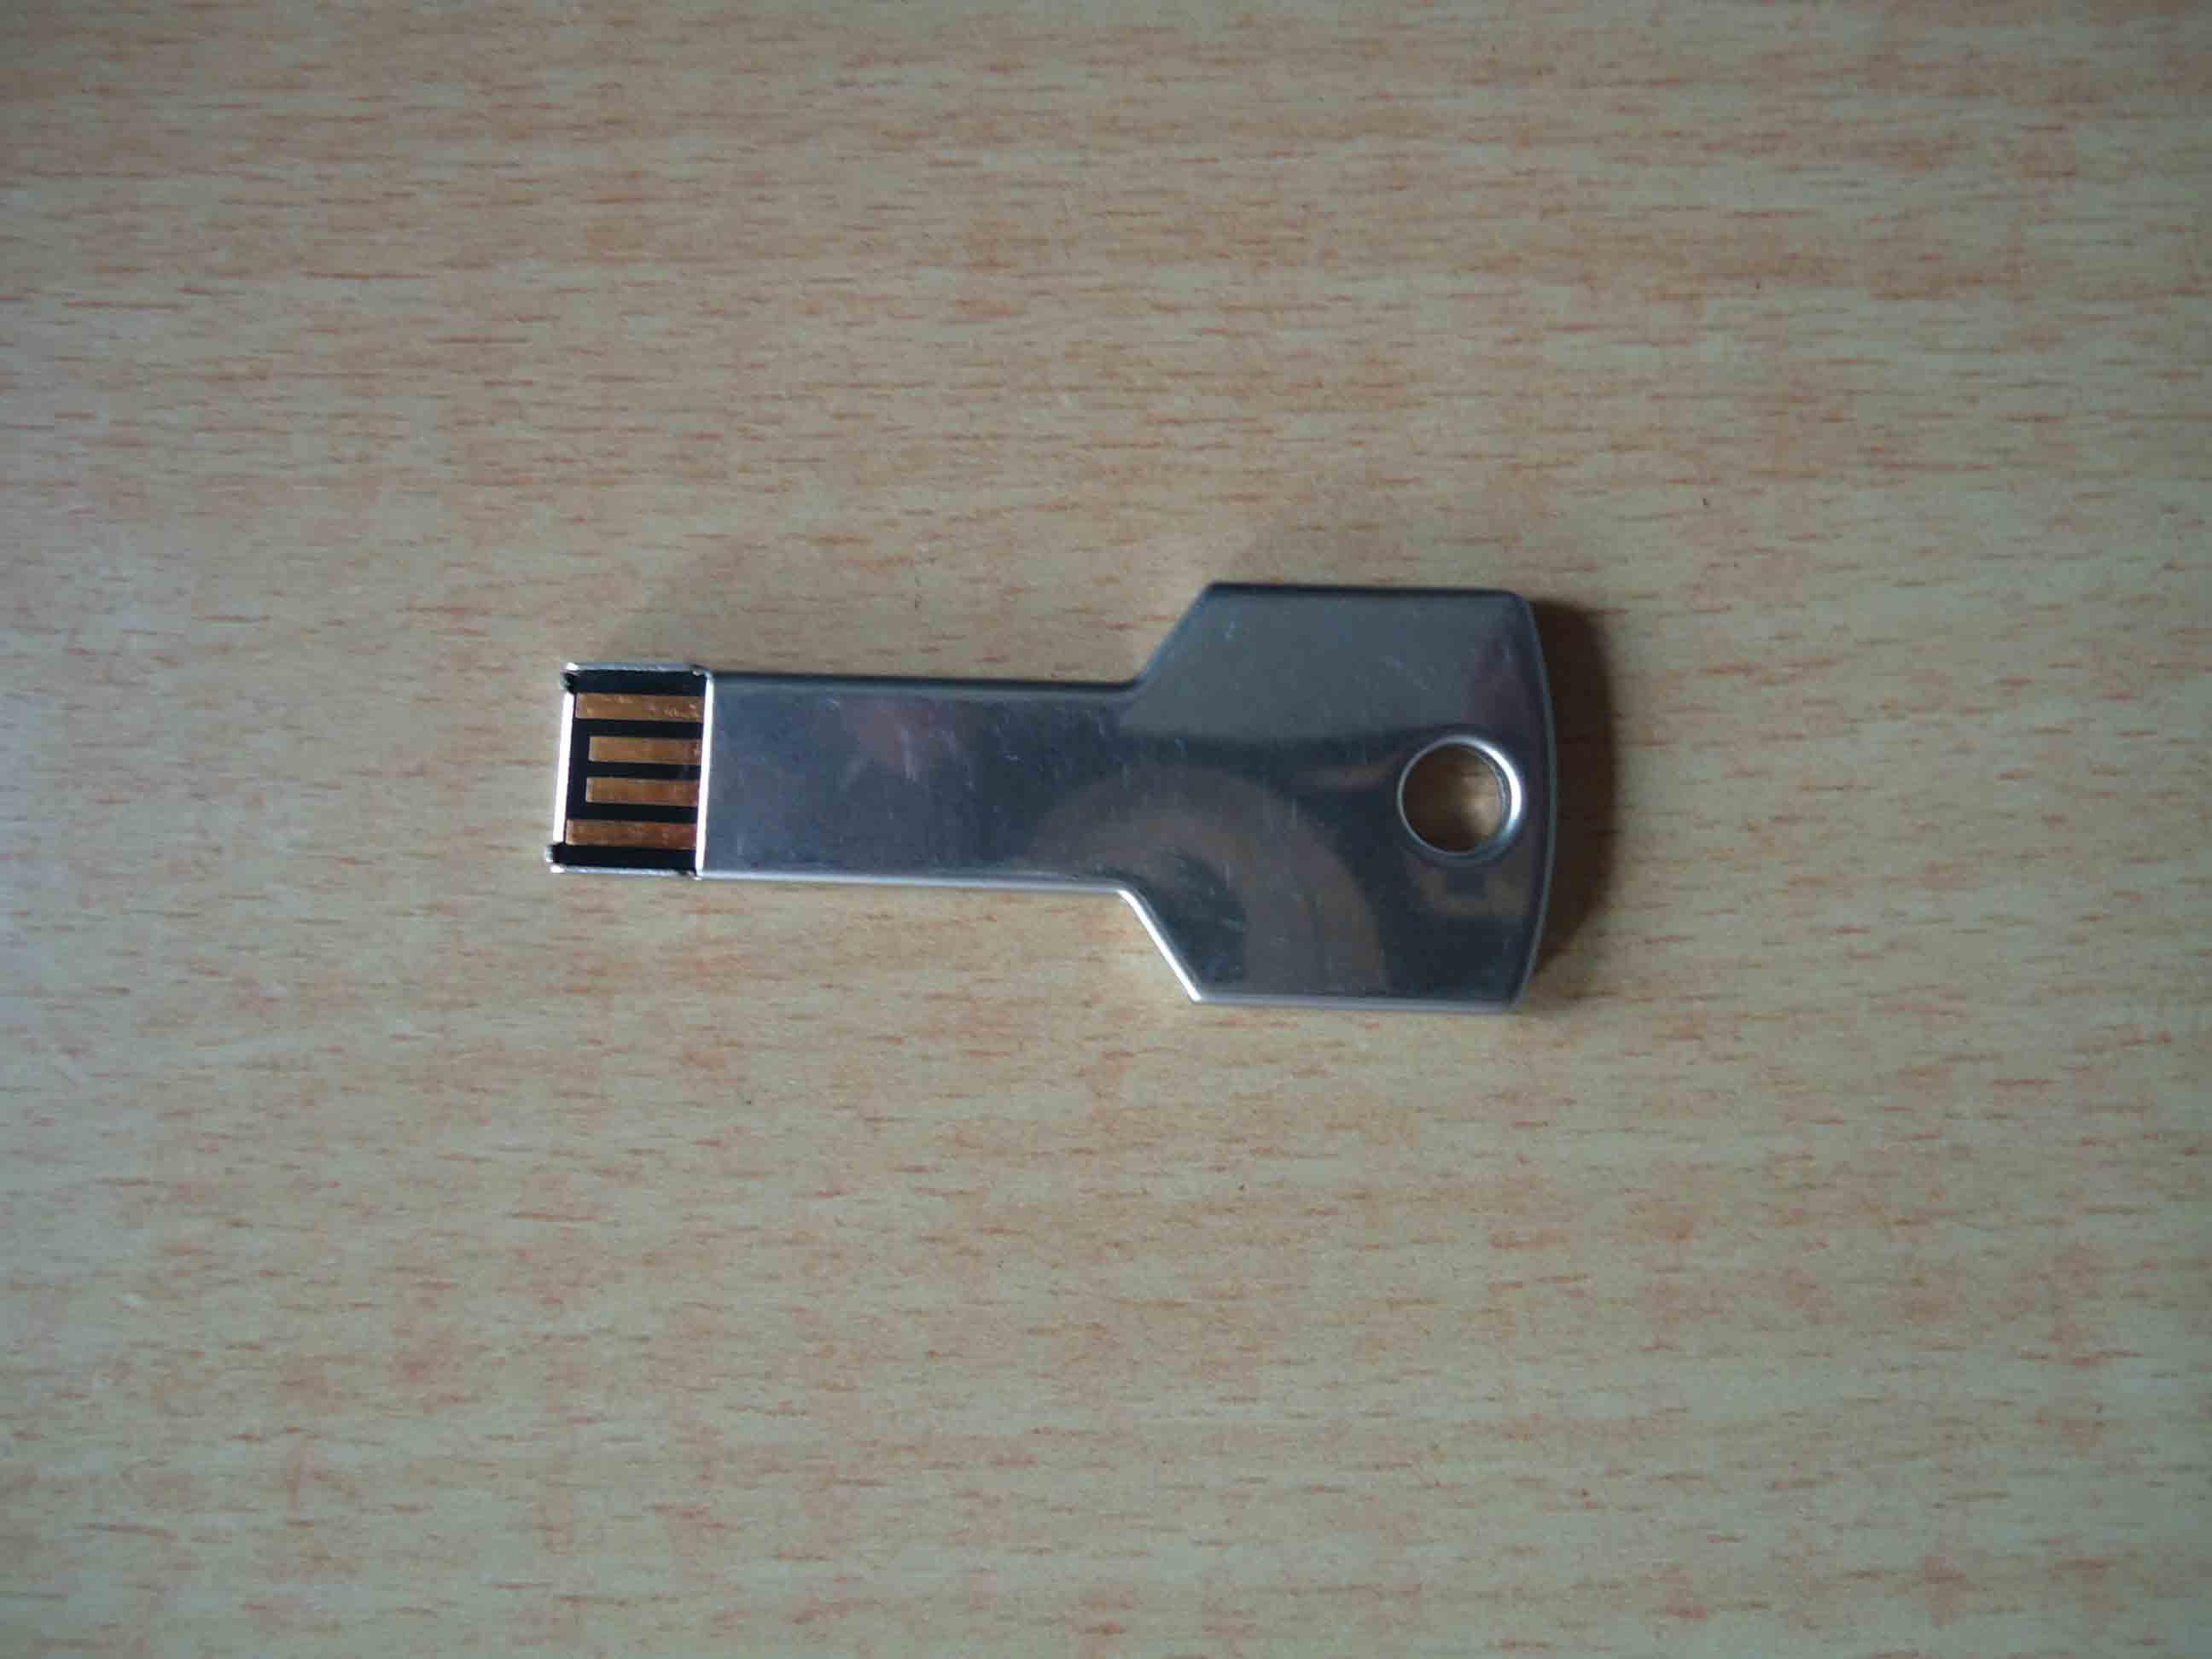 Peligros de seguridad de las memorias USB